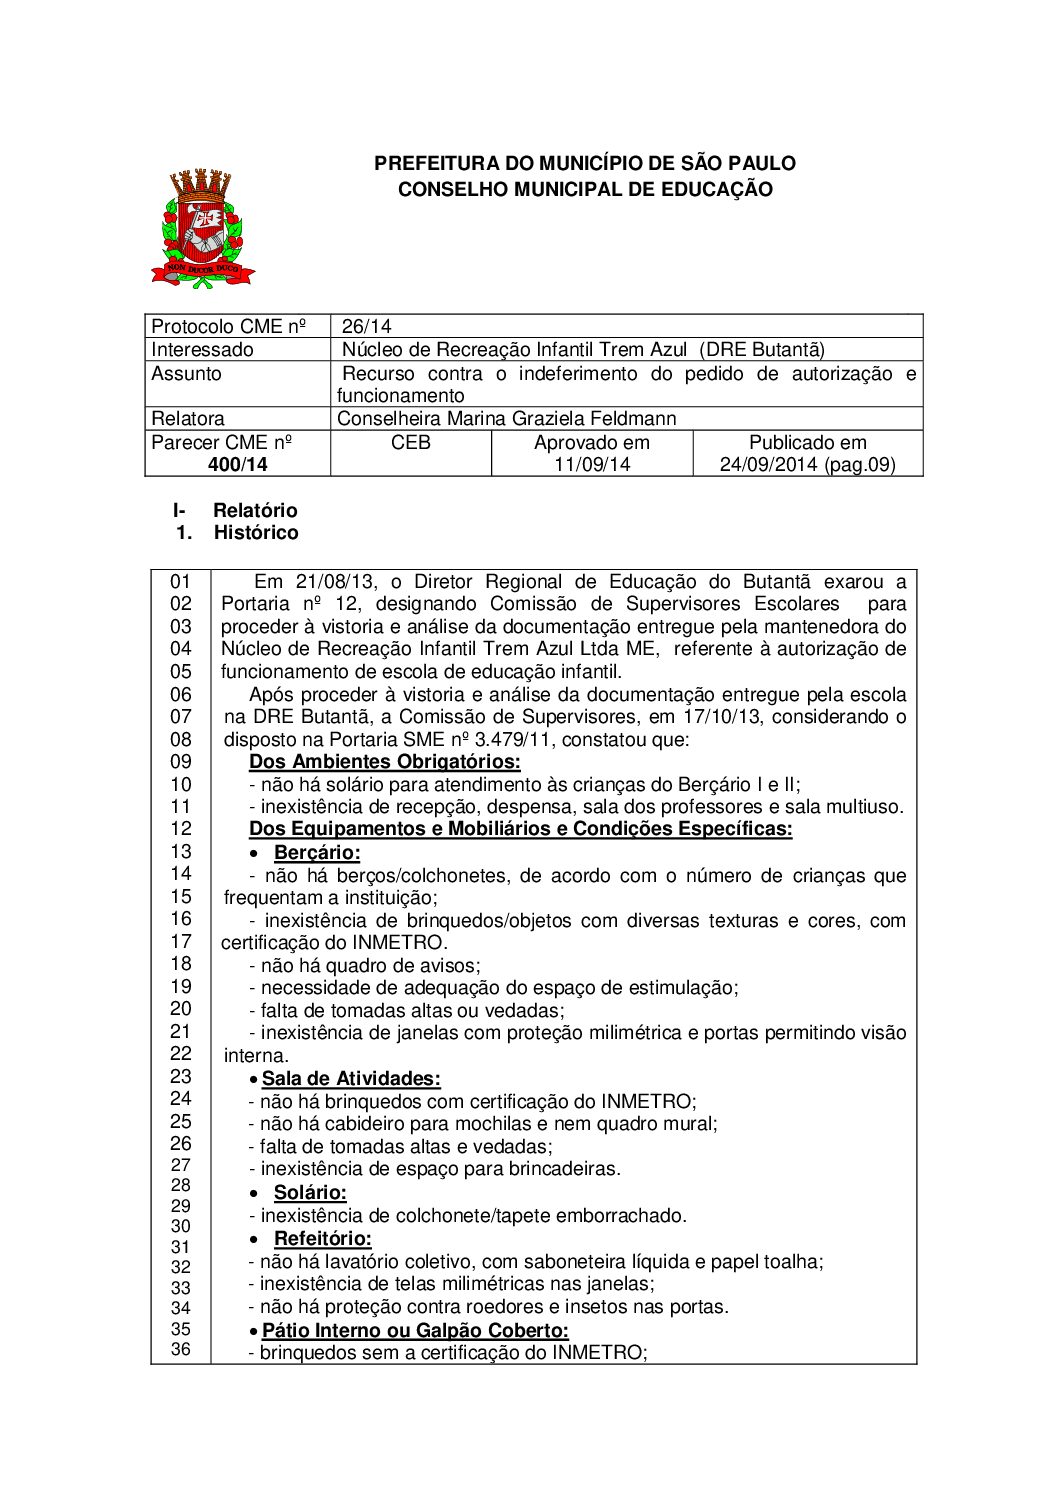 Parecer CME nº 400/2014 - Núcleo de Recreação Infantil Trem Azul  (DRE Butantã) - Recurso contra o indeferimento do pedido de autorização e funcionamento 